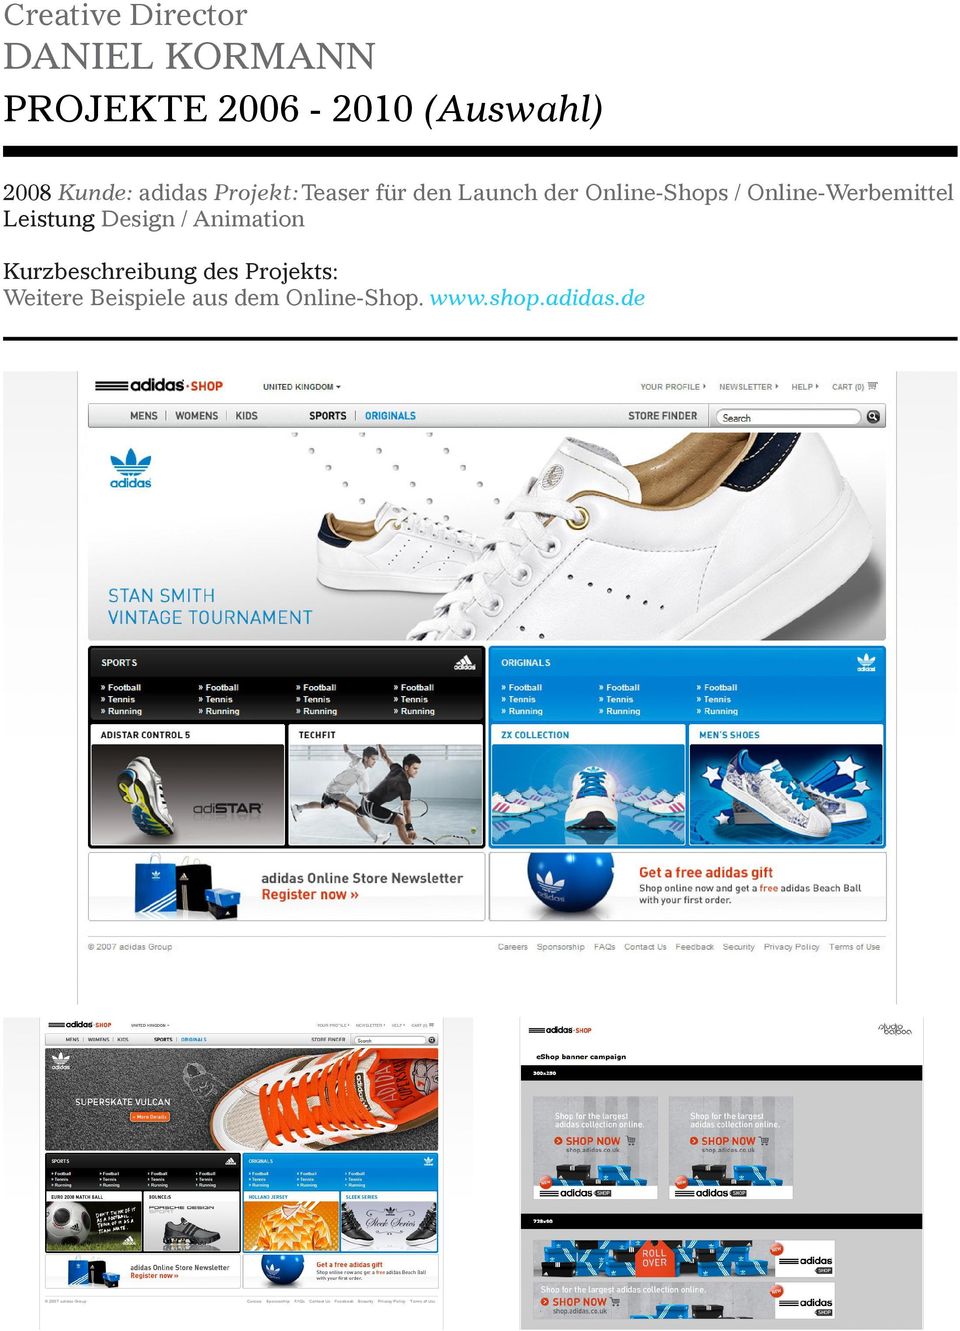 Online-Werbemittel Leistung Design /